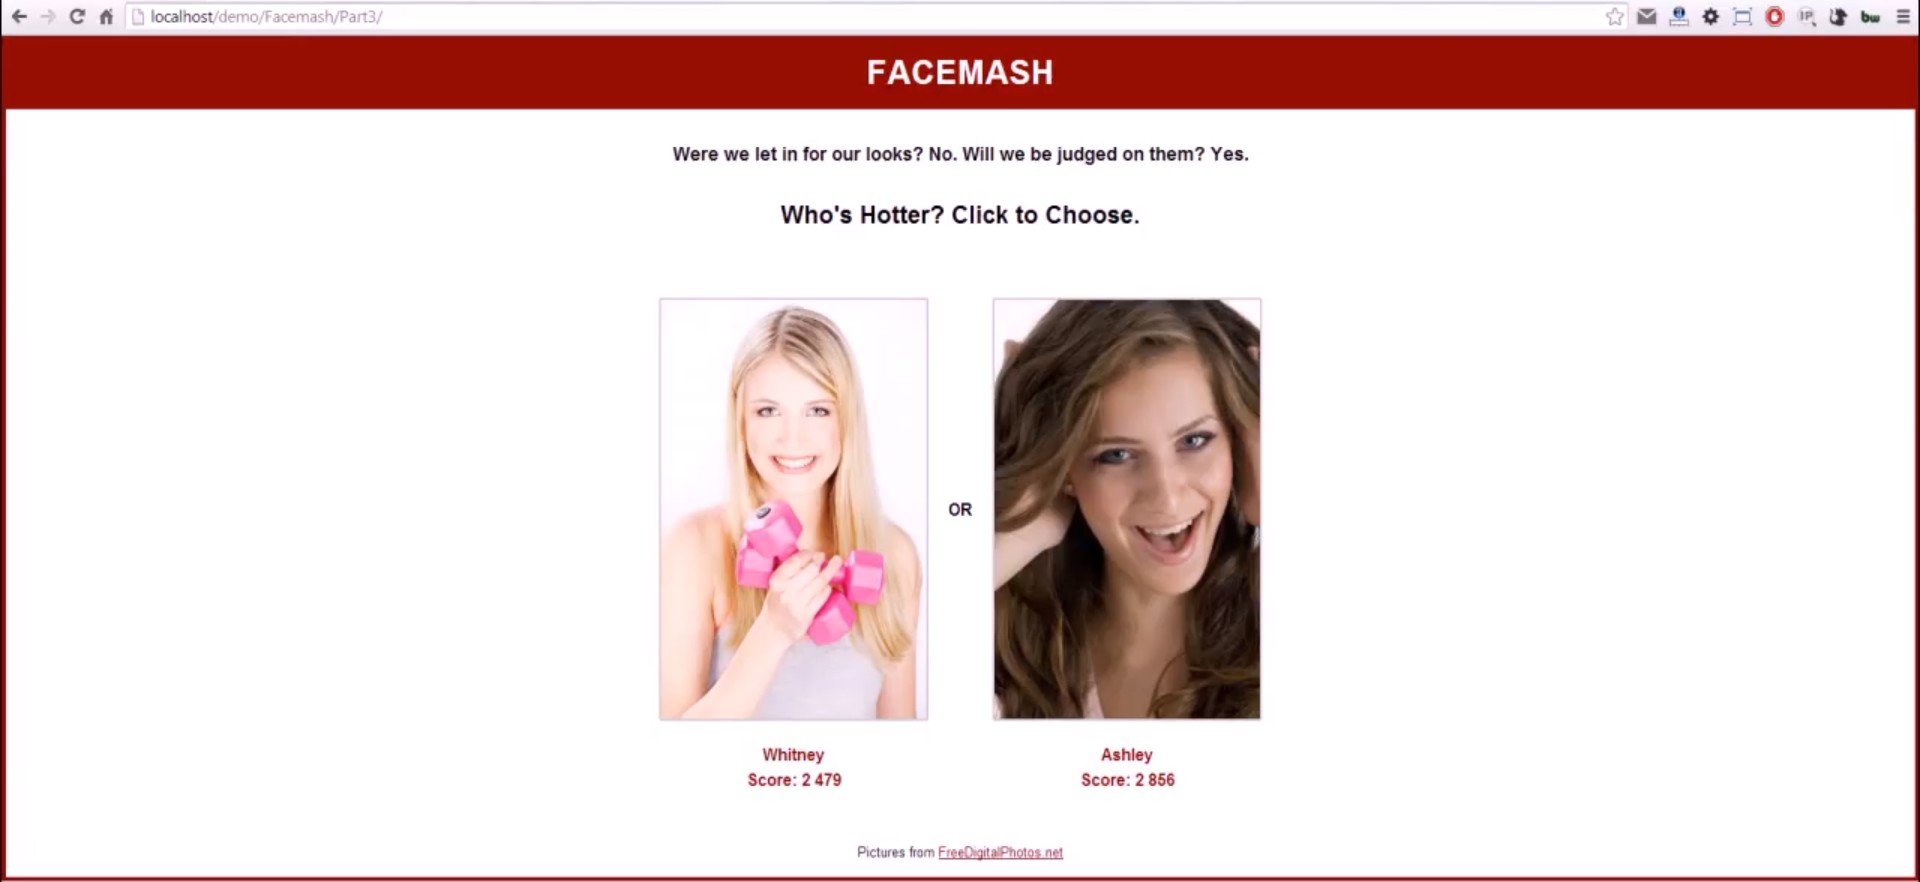 Facemash_prva socialna siet